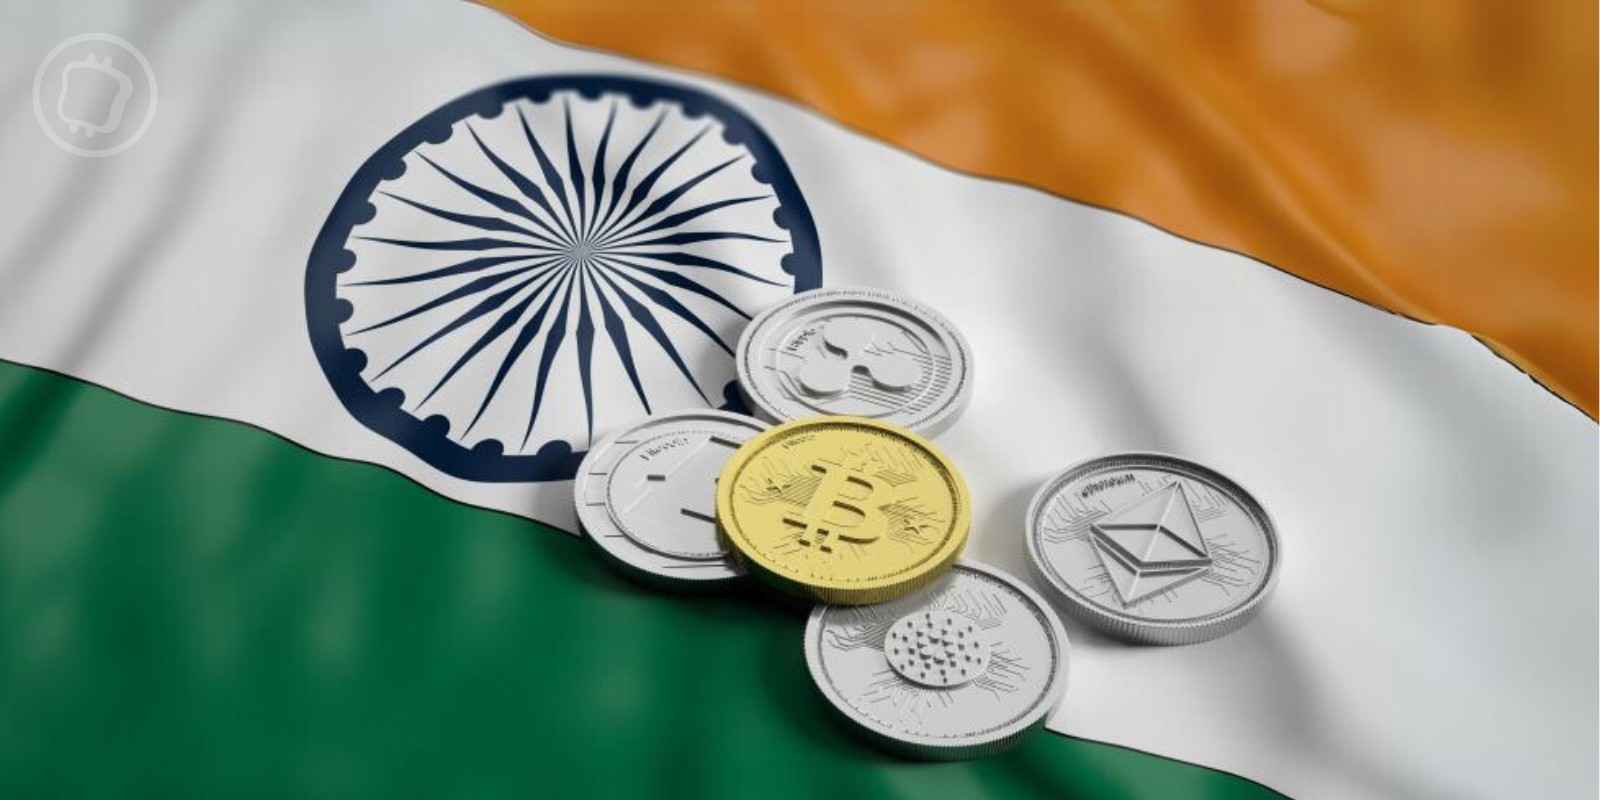 L'India ha deciso di vietare Binance, Kraken, Bitfinex e altre piattaforme di trading